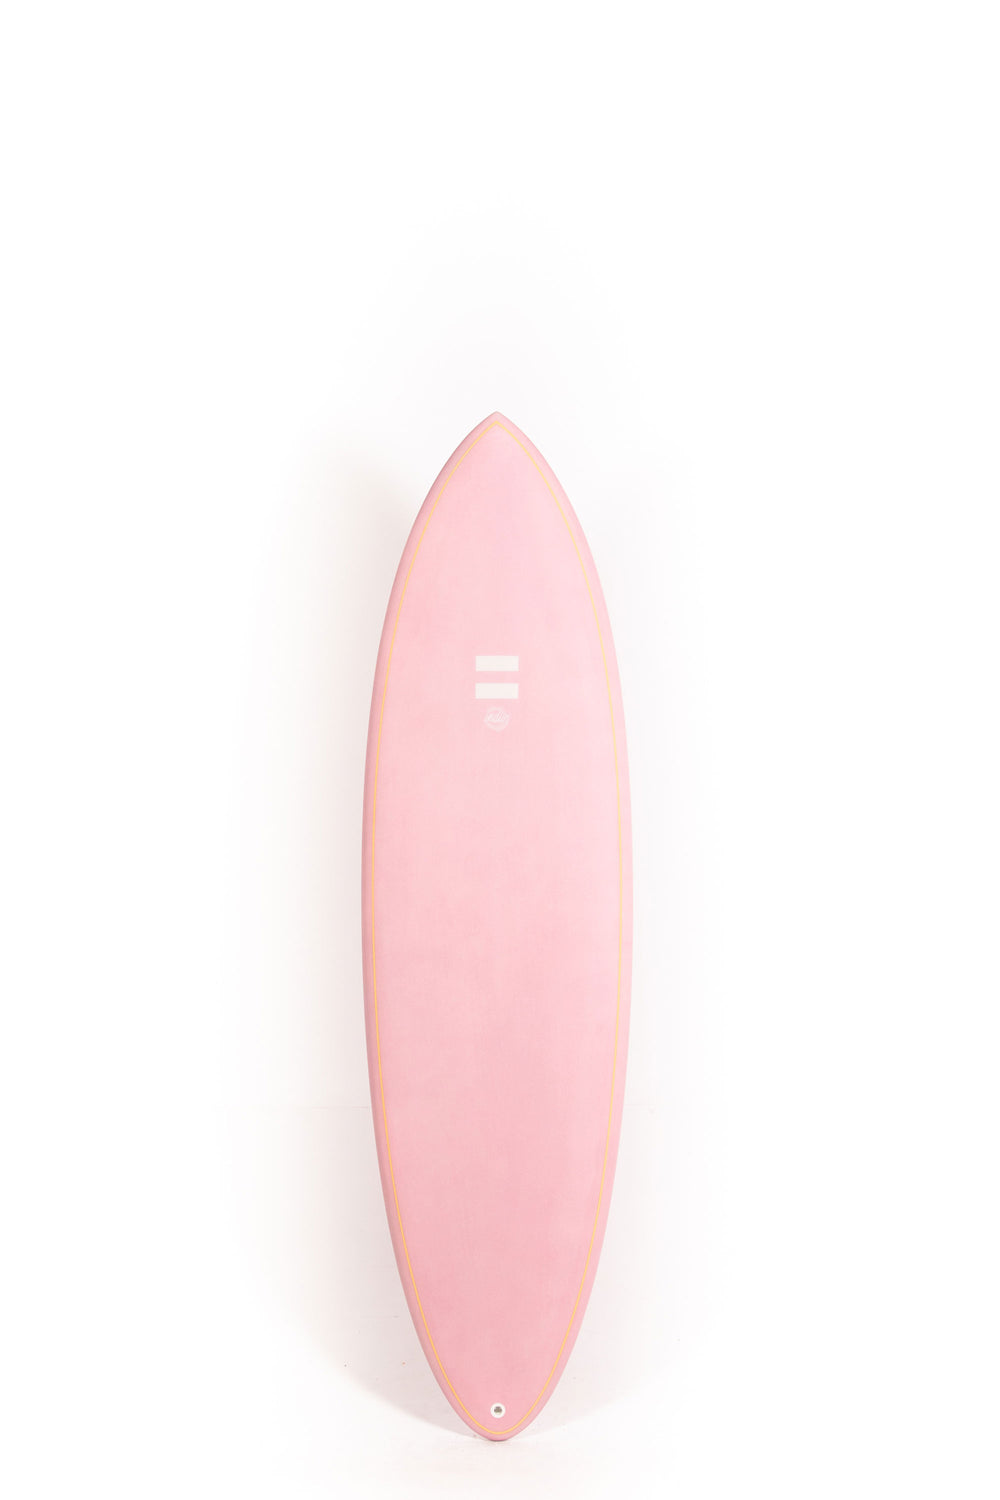 Indio Surfboards - RACER Pink - 6'8